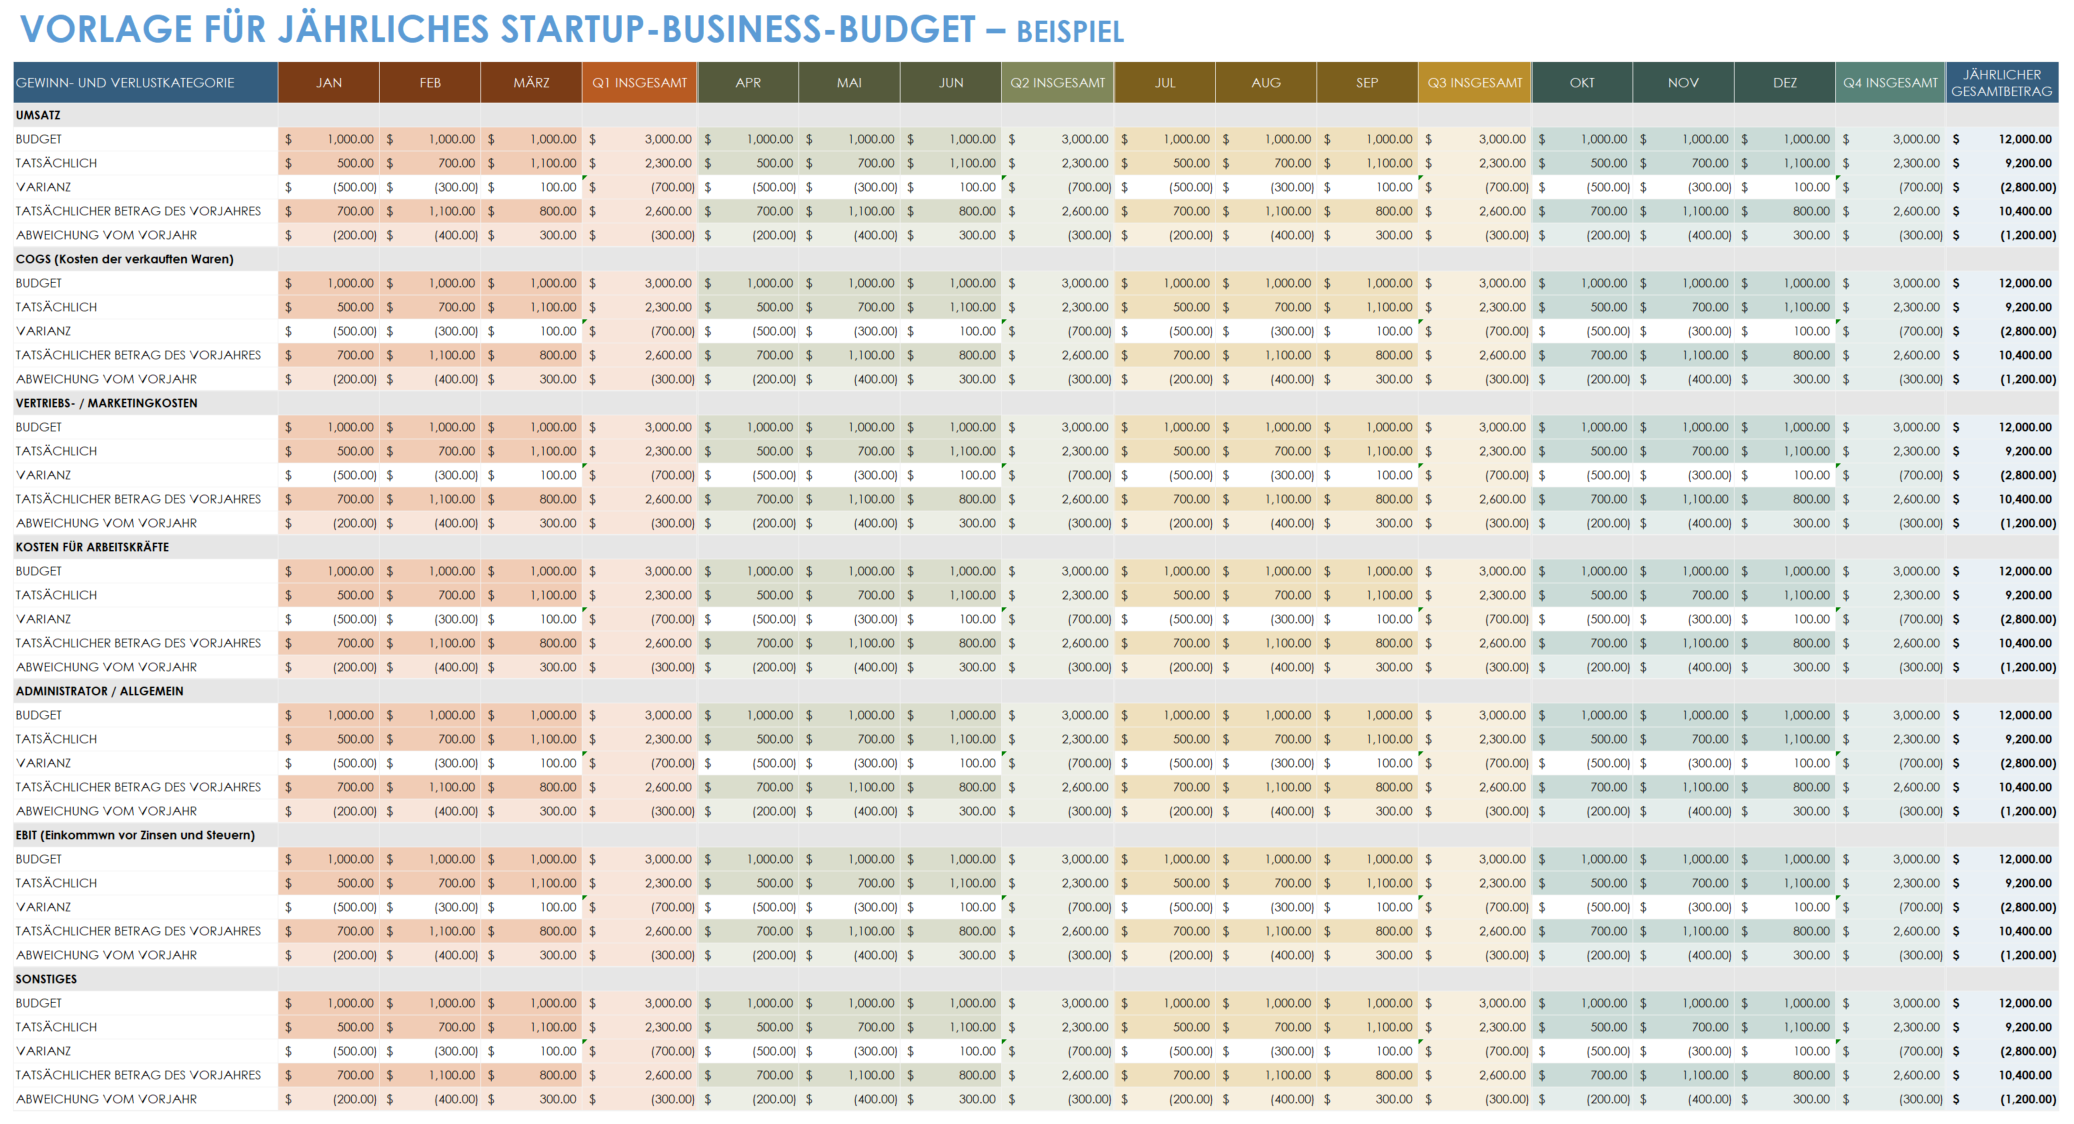 Jährliches Startup-Unternehmensbudget